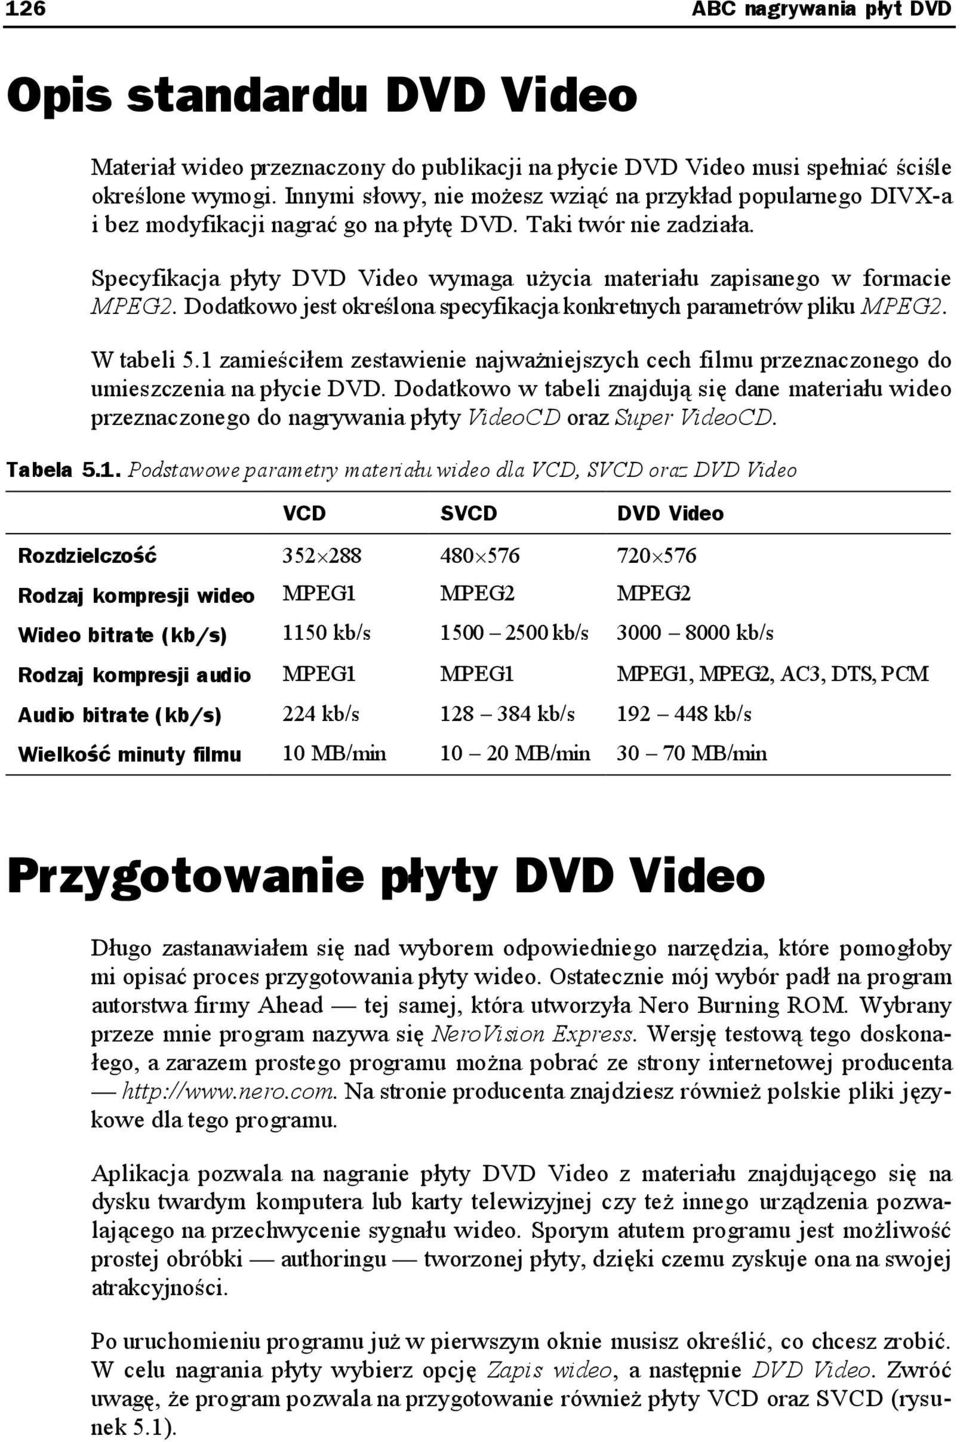 Specyfikacja płyty DVD Video wymaga użycia materiału zapisanego w formacie MPEG2. Dodatkowo jest określona specyfikacja konkretnych parametrów pliku MPEG2. W tabeli 5.